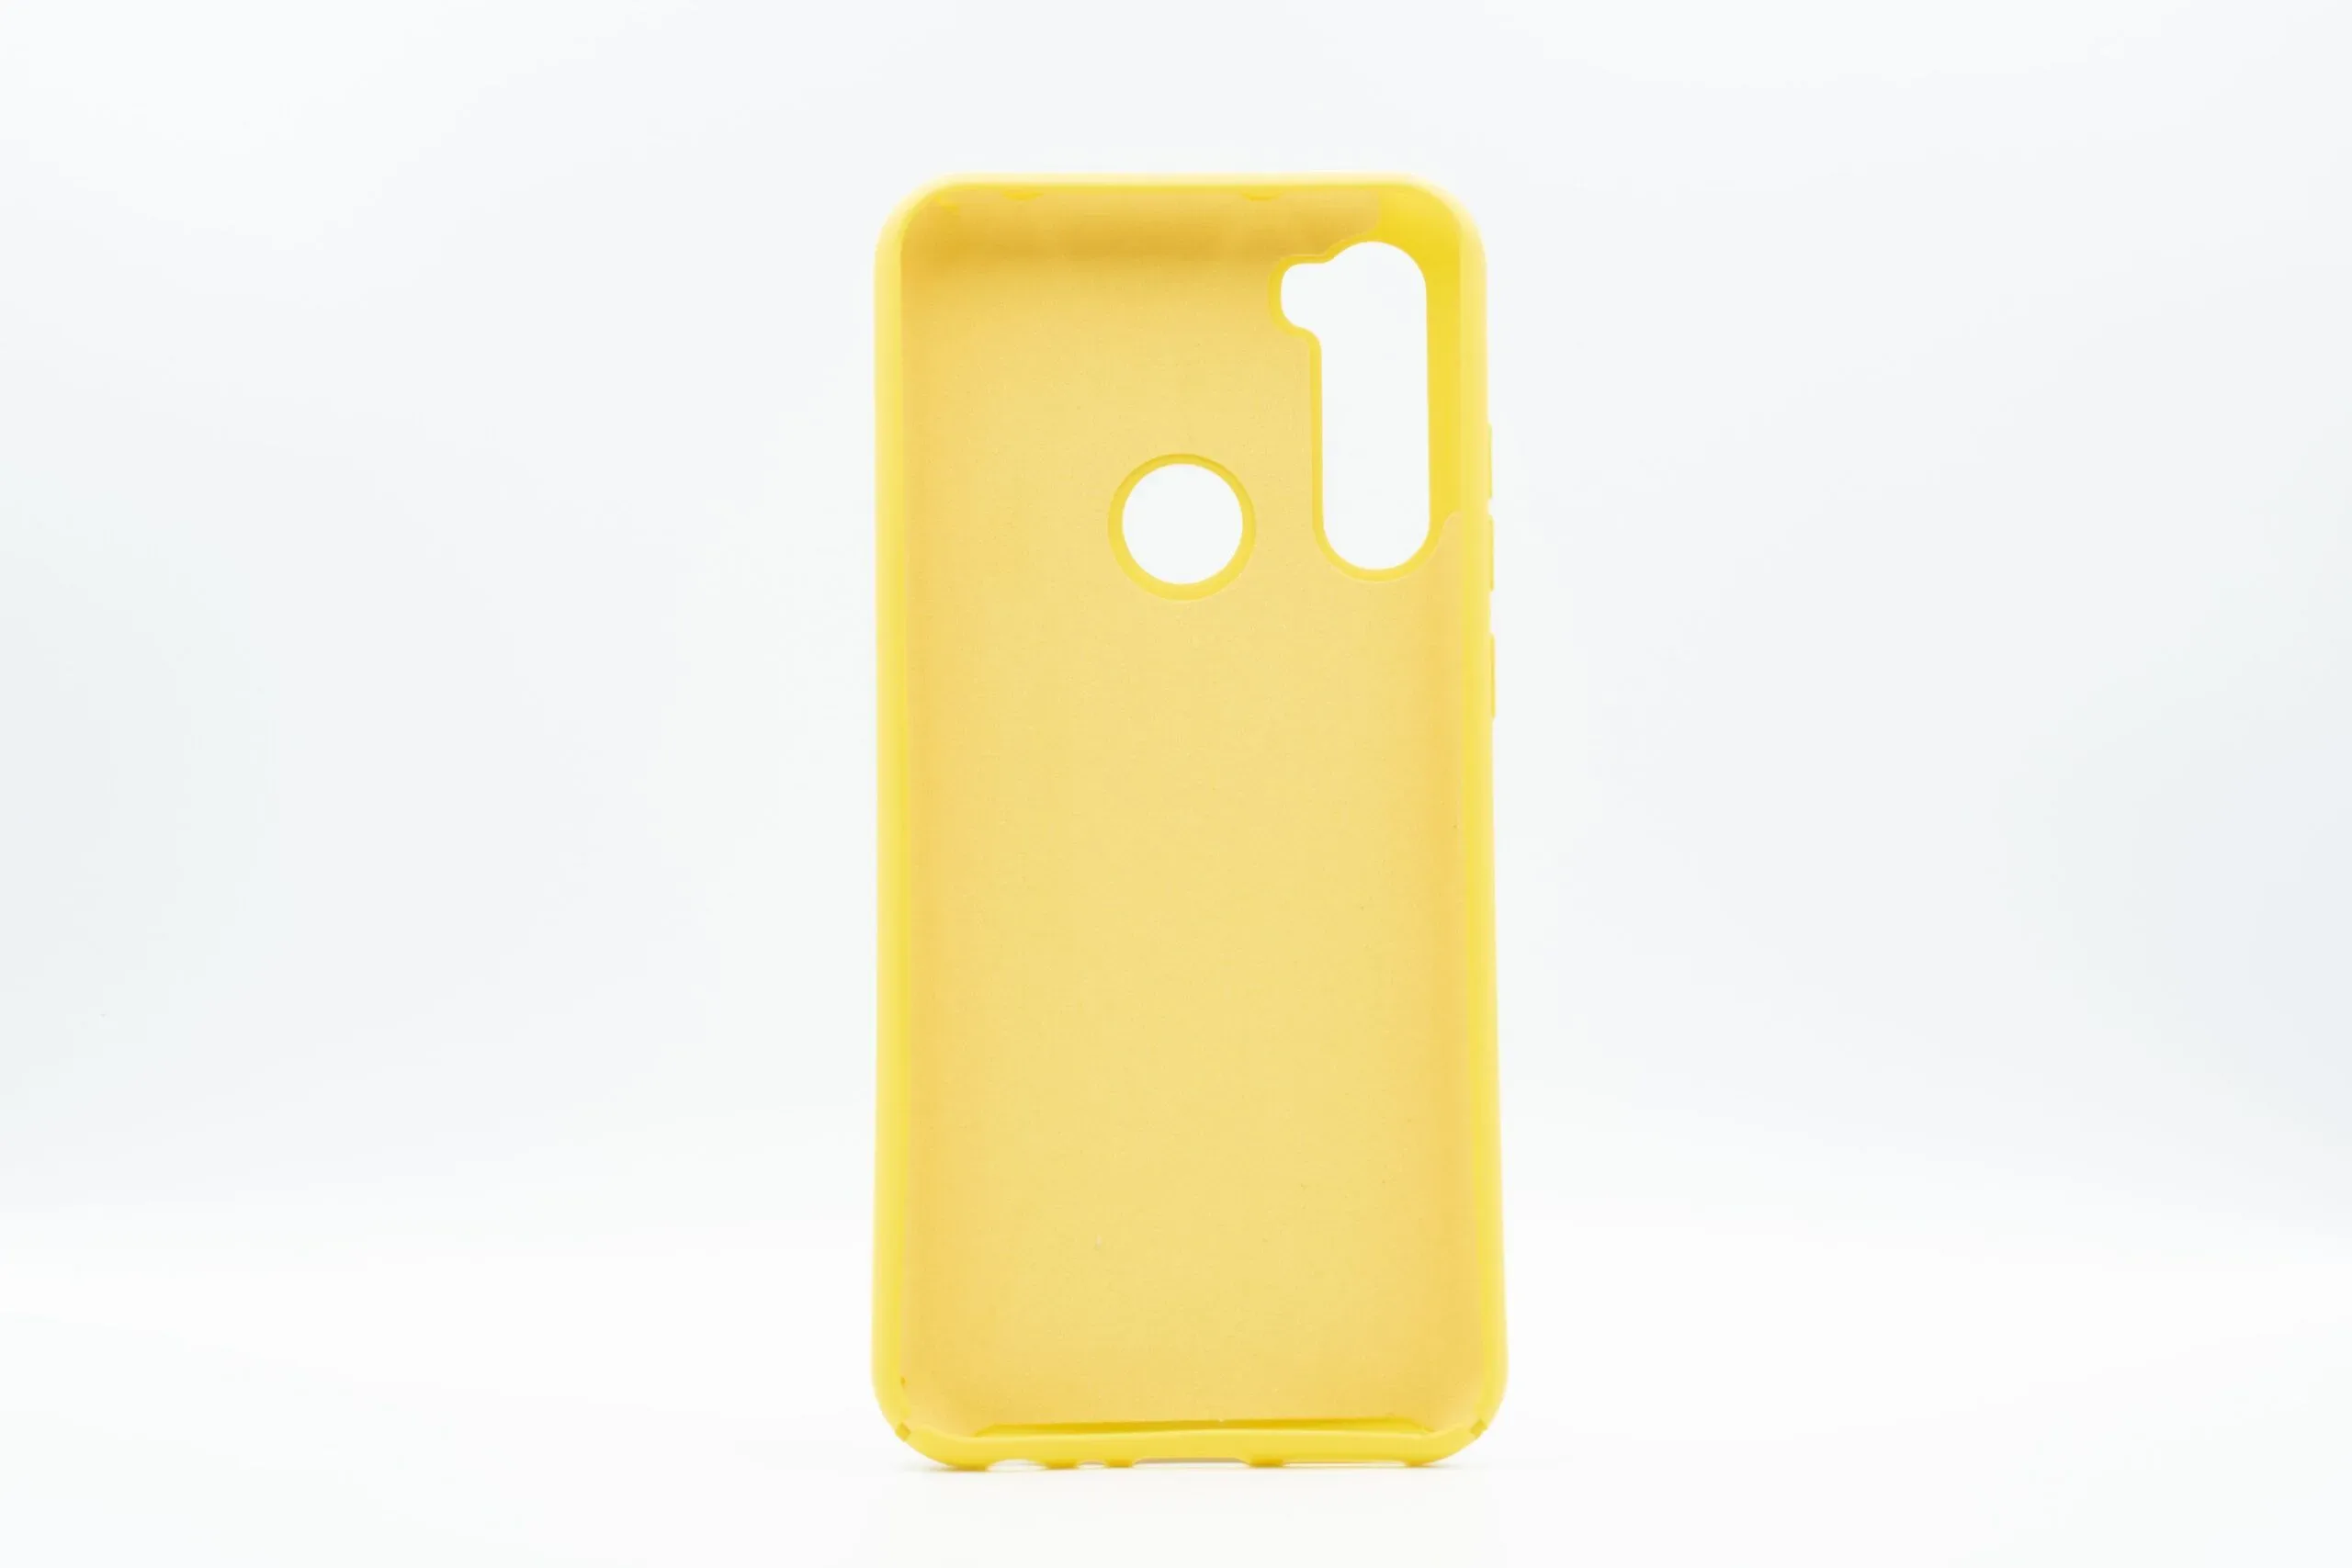 Xiaomi Redmi Note 8T Θήκη Σιλικόνης Κίτρινη